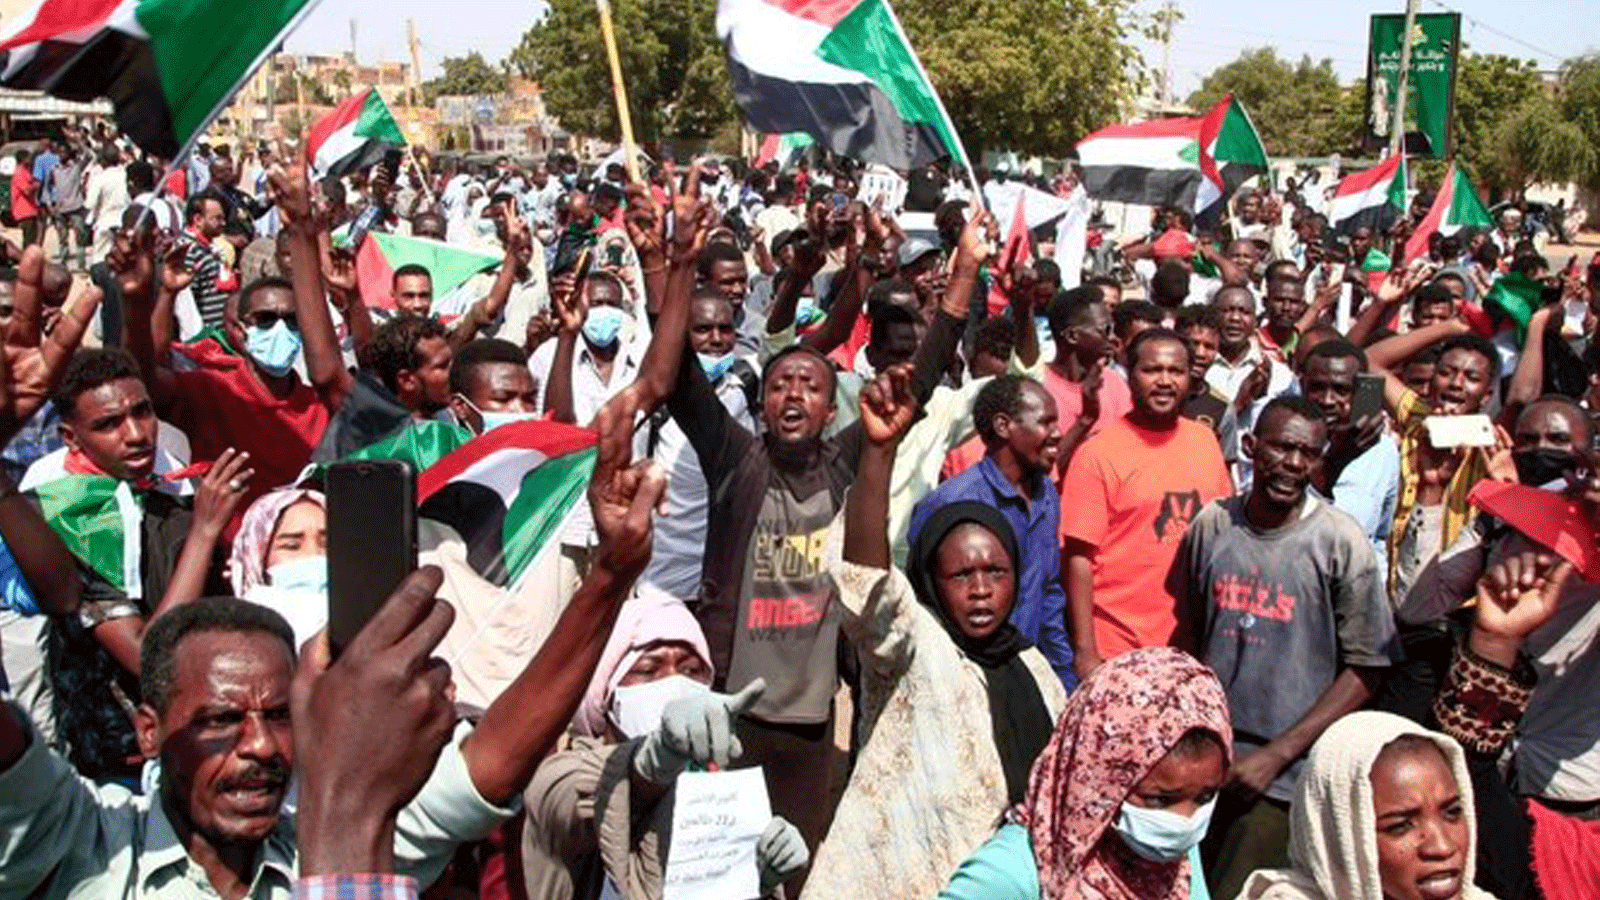 متظاهرون سودانيون في شوارع أم درمان يطالبون بانتقال الحكومة إلى الحكم المدني